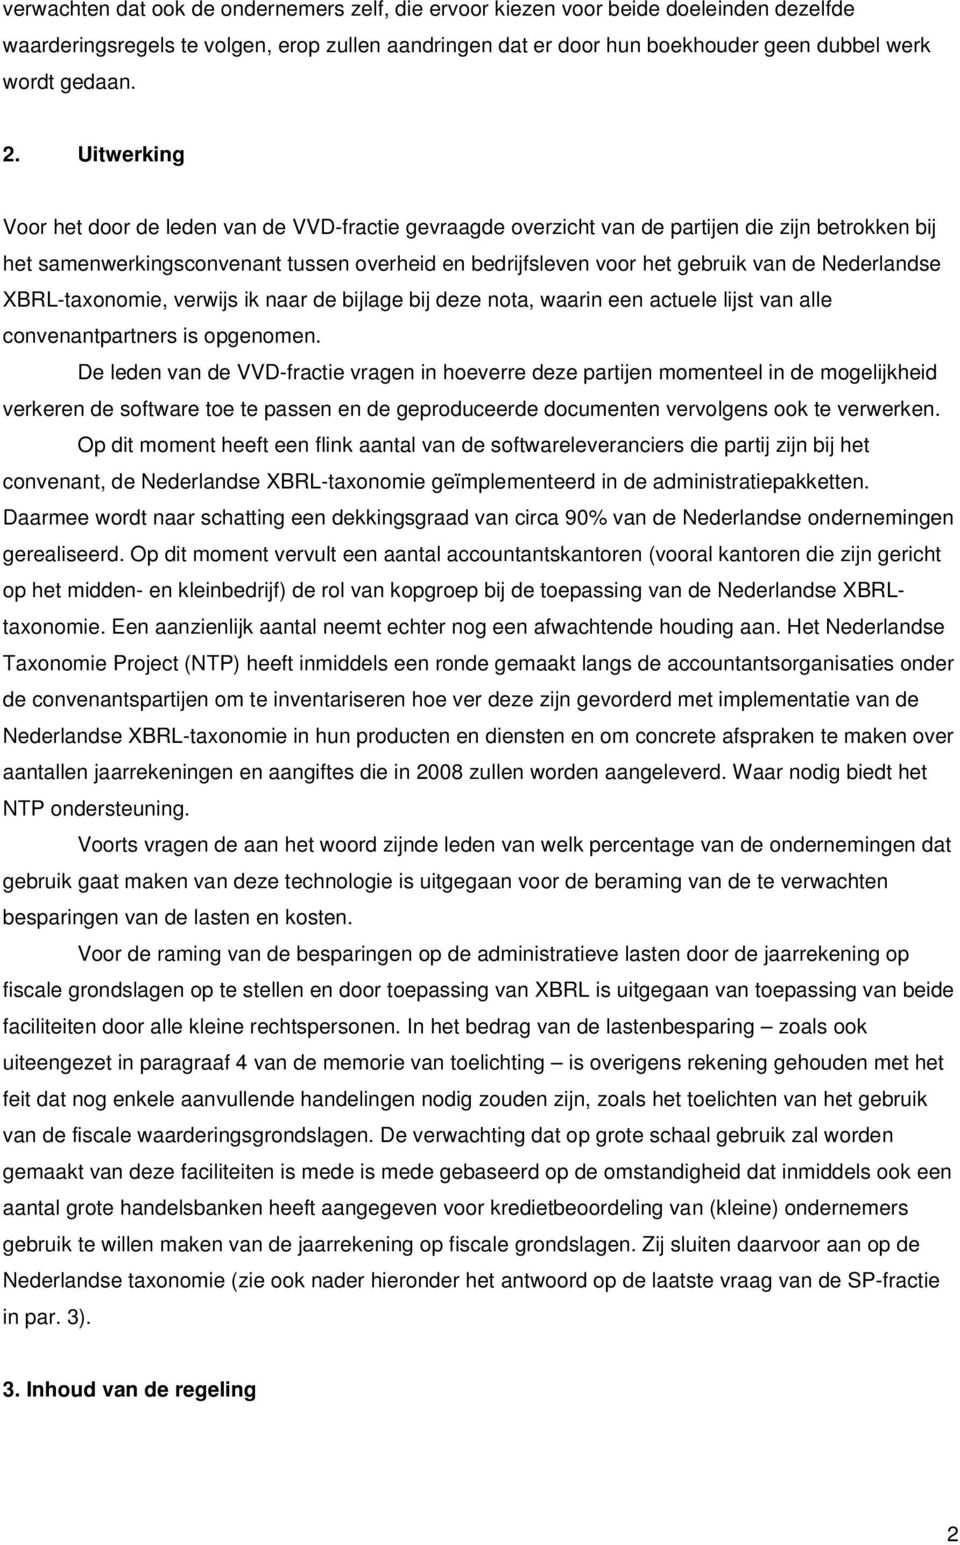 Nederlandse XBRL-taxonomie, verwijs ik naar de bijlage bij deze nota, waarin een actuele lijst van alle convenantpartners is opgenomen.